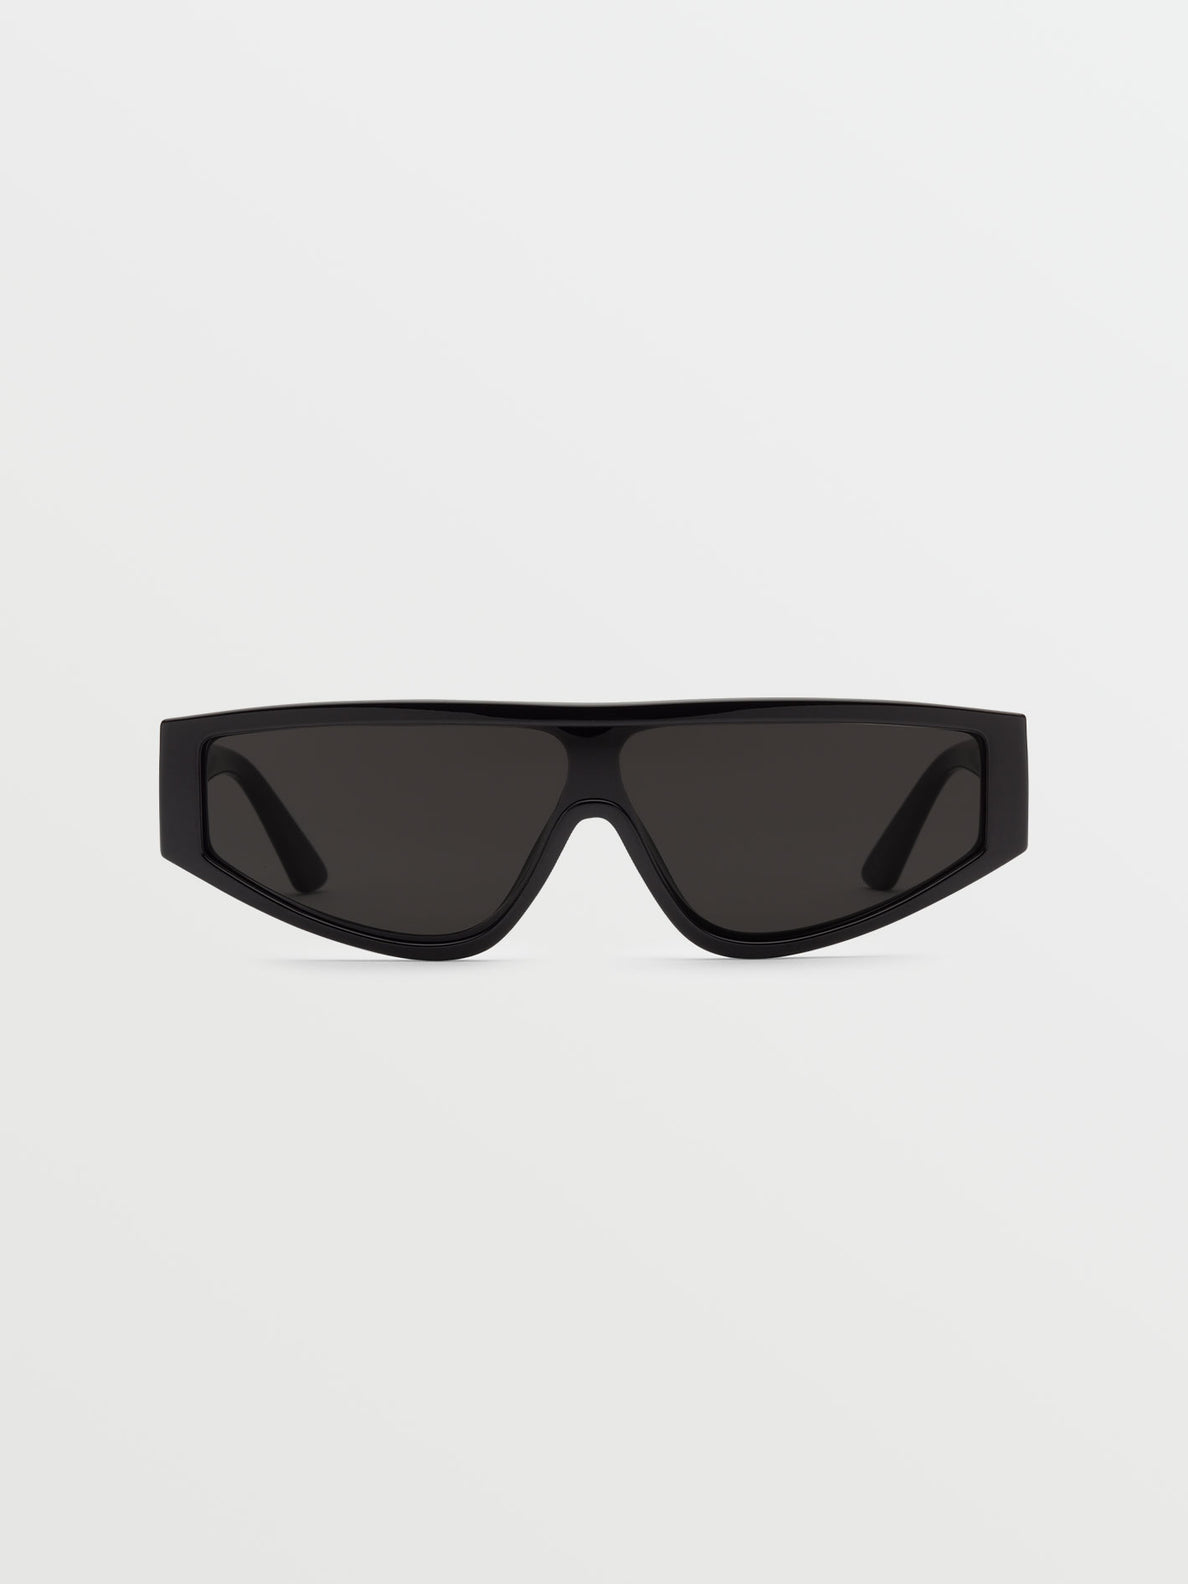 Vinyl Glaze Gloss Black Sunglasses (Gray Lens) - BLACK